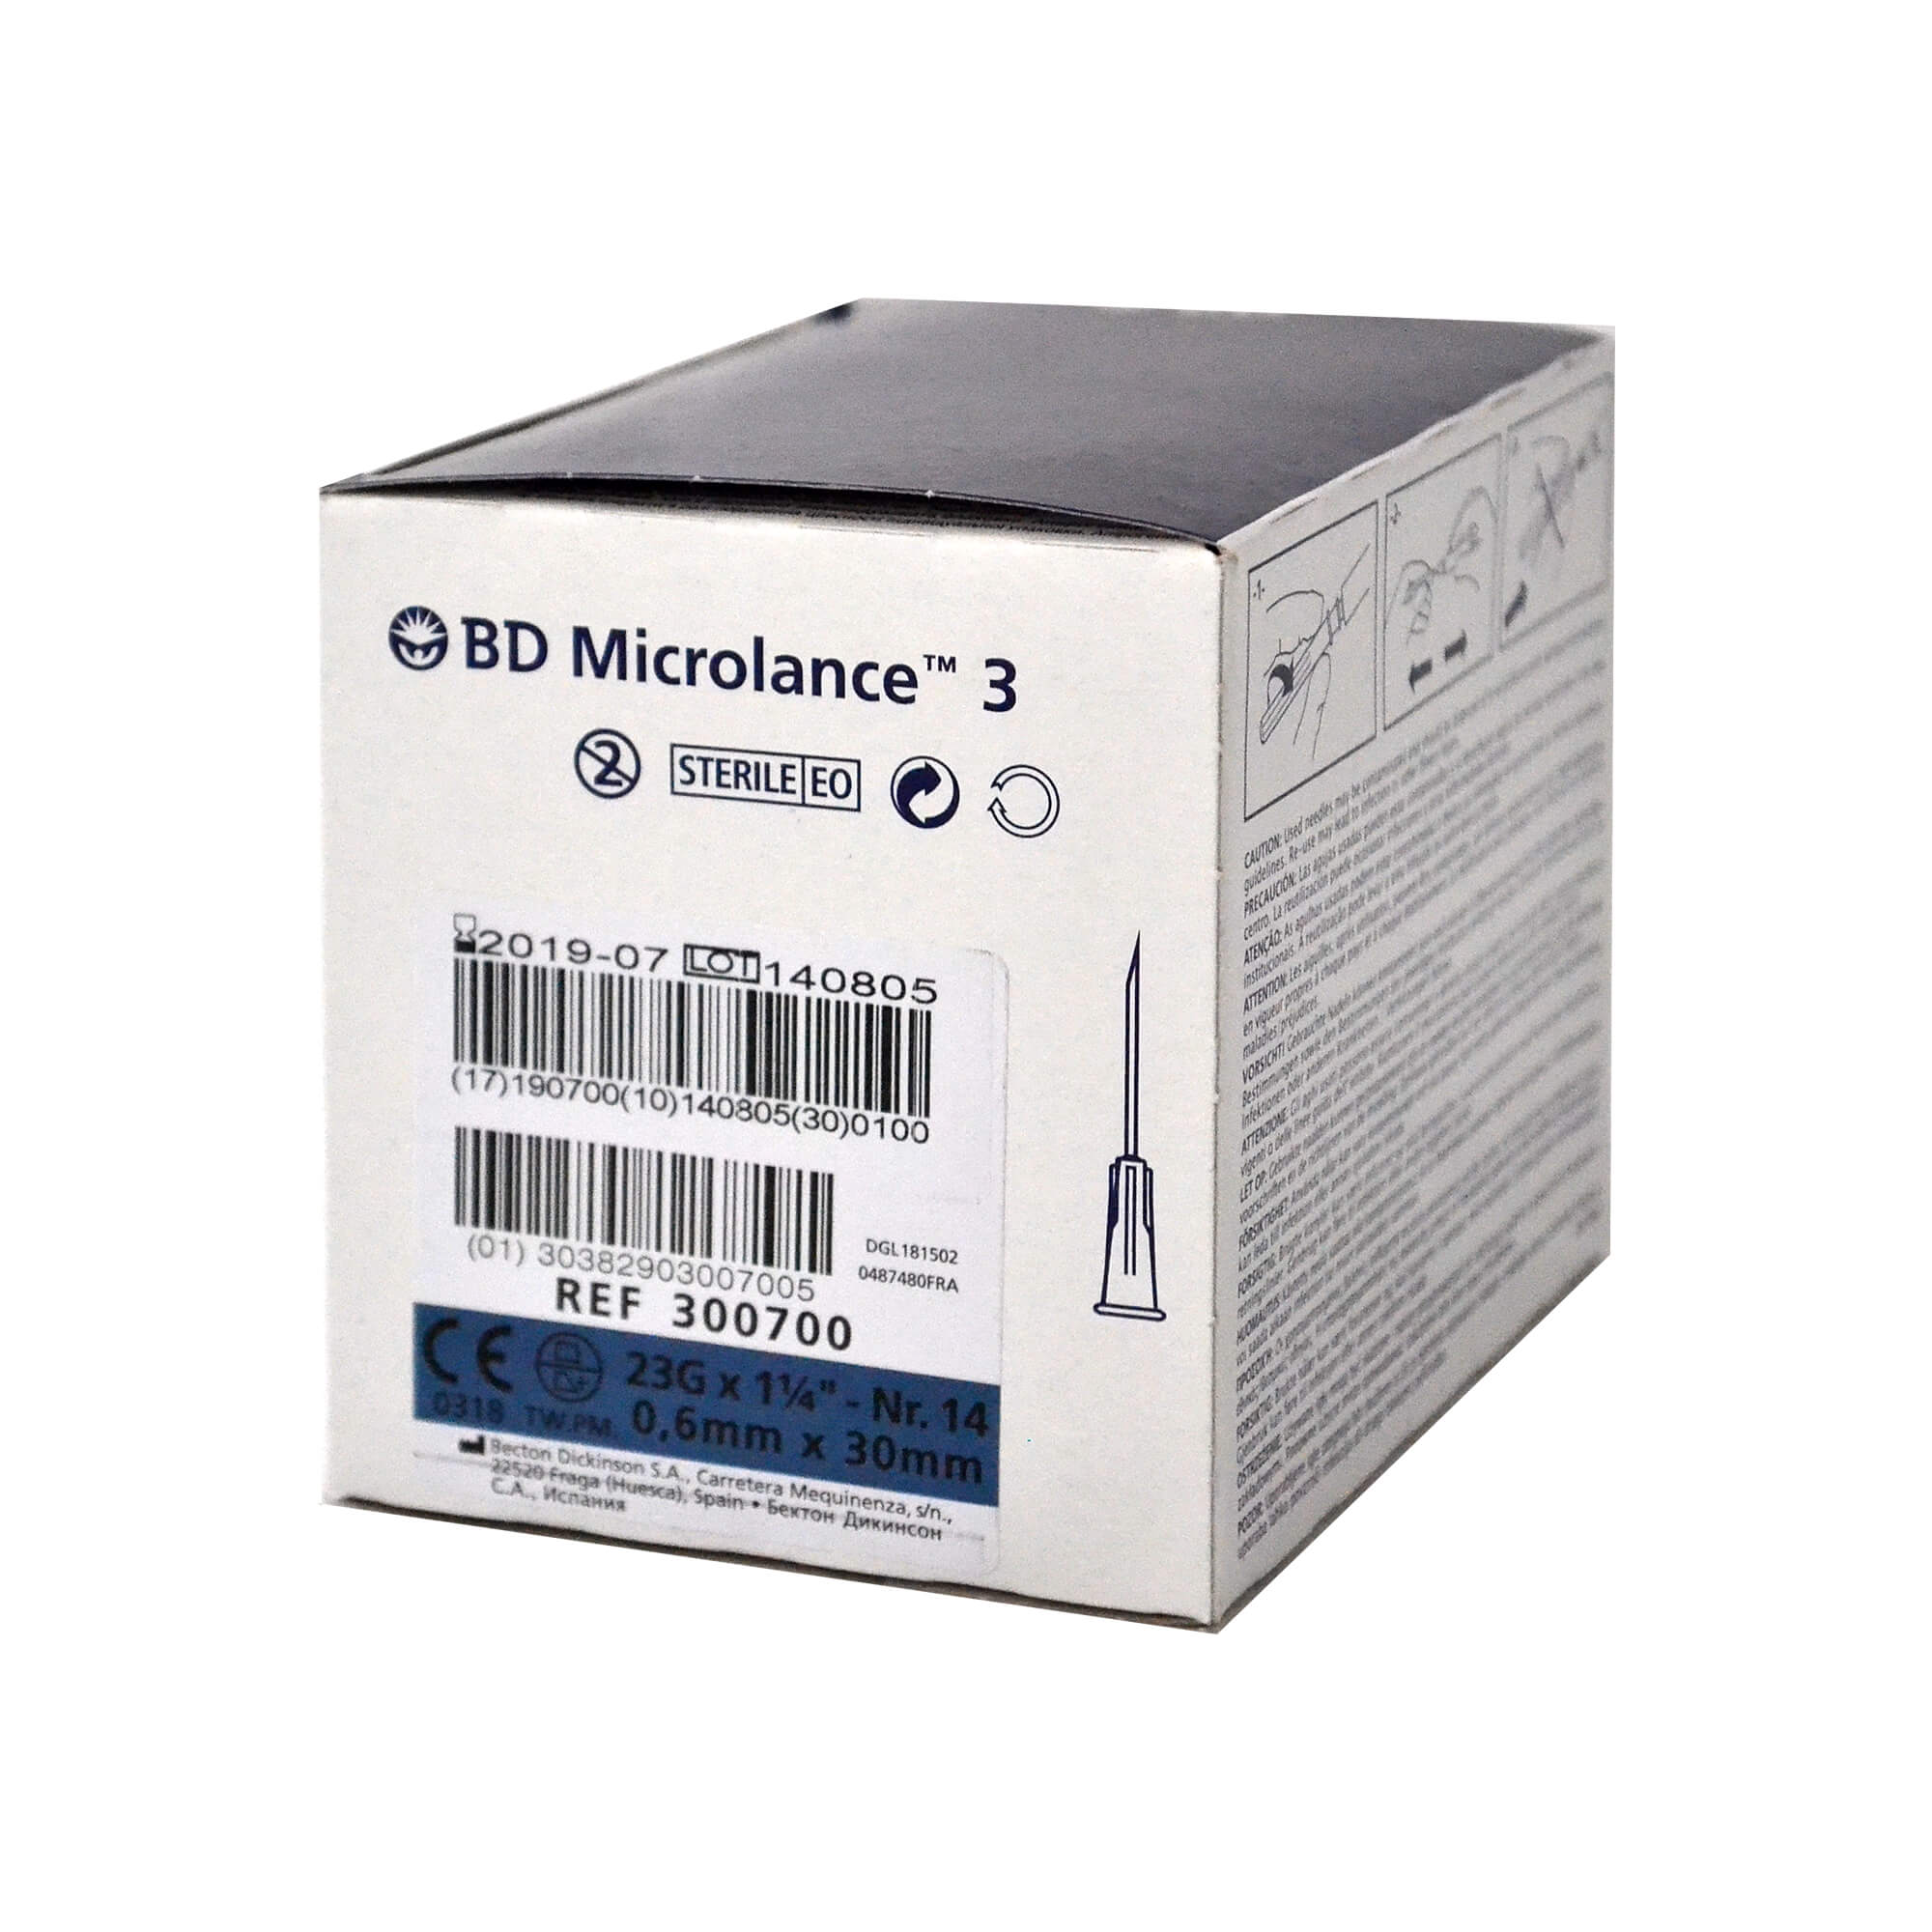 BD Microlance 3 Kanüle, 23 G x 1 1/4", Nr. 14, 0,6 mm x 30 mm.